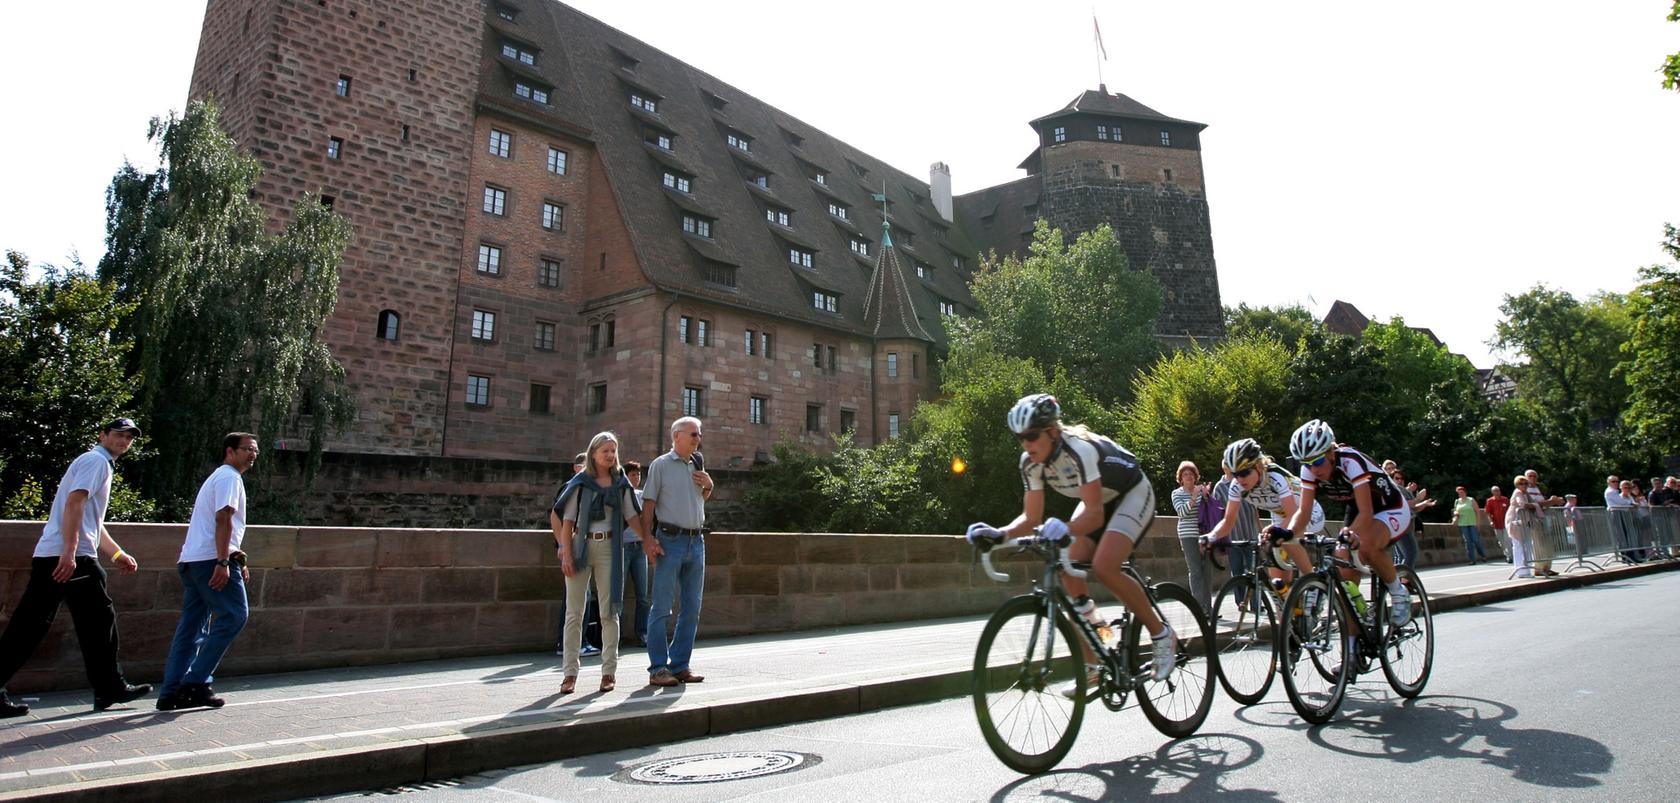 Das Jedermannrennen führt am Wochenende zu Verkehrsbehinderungen in Nürnberg.